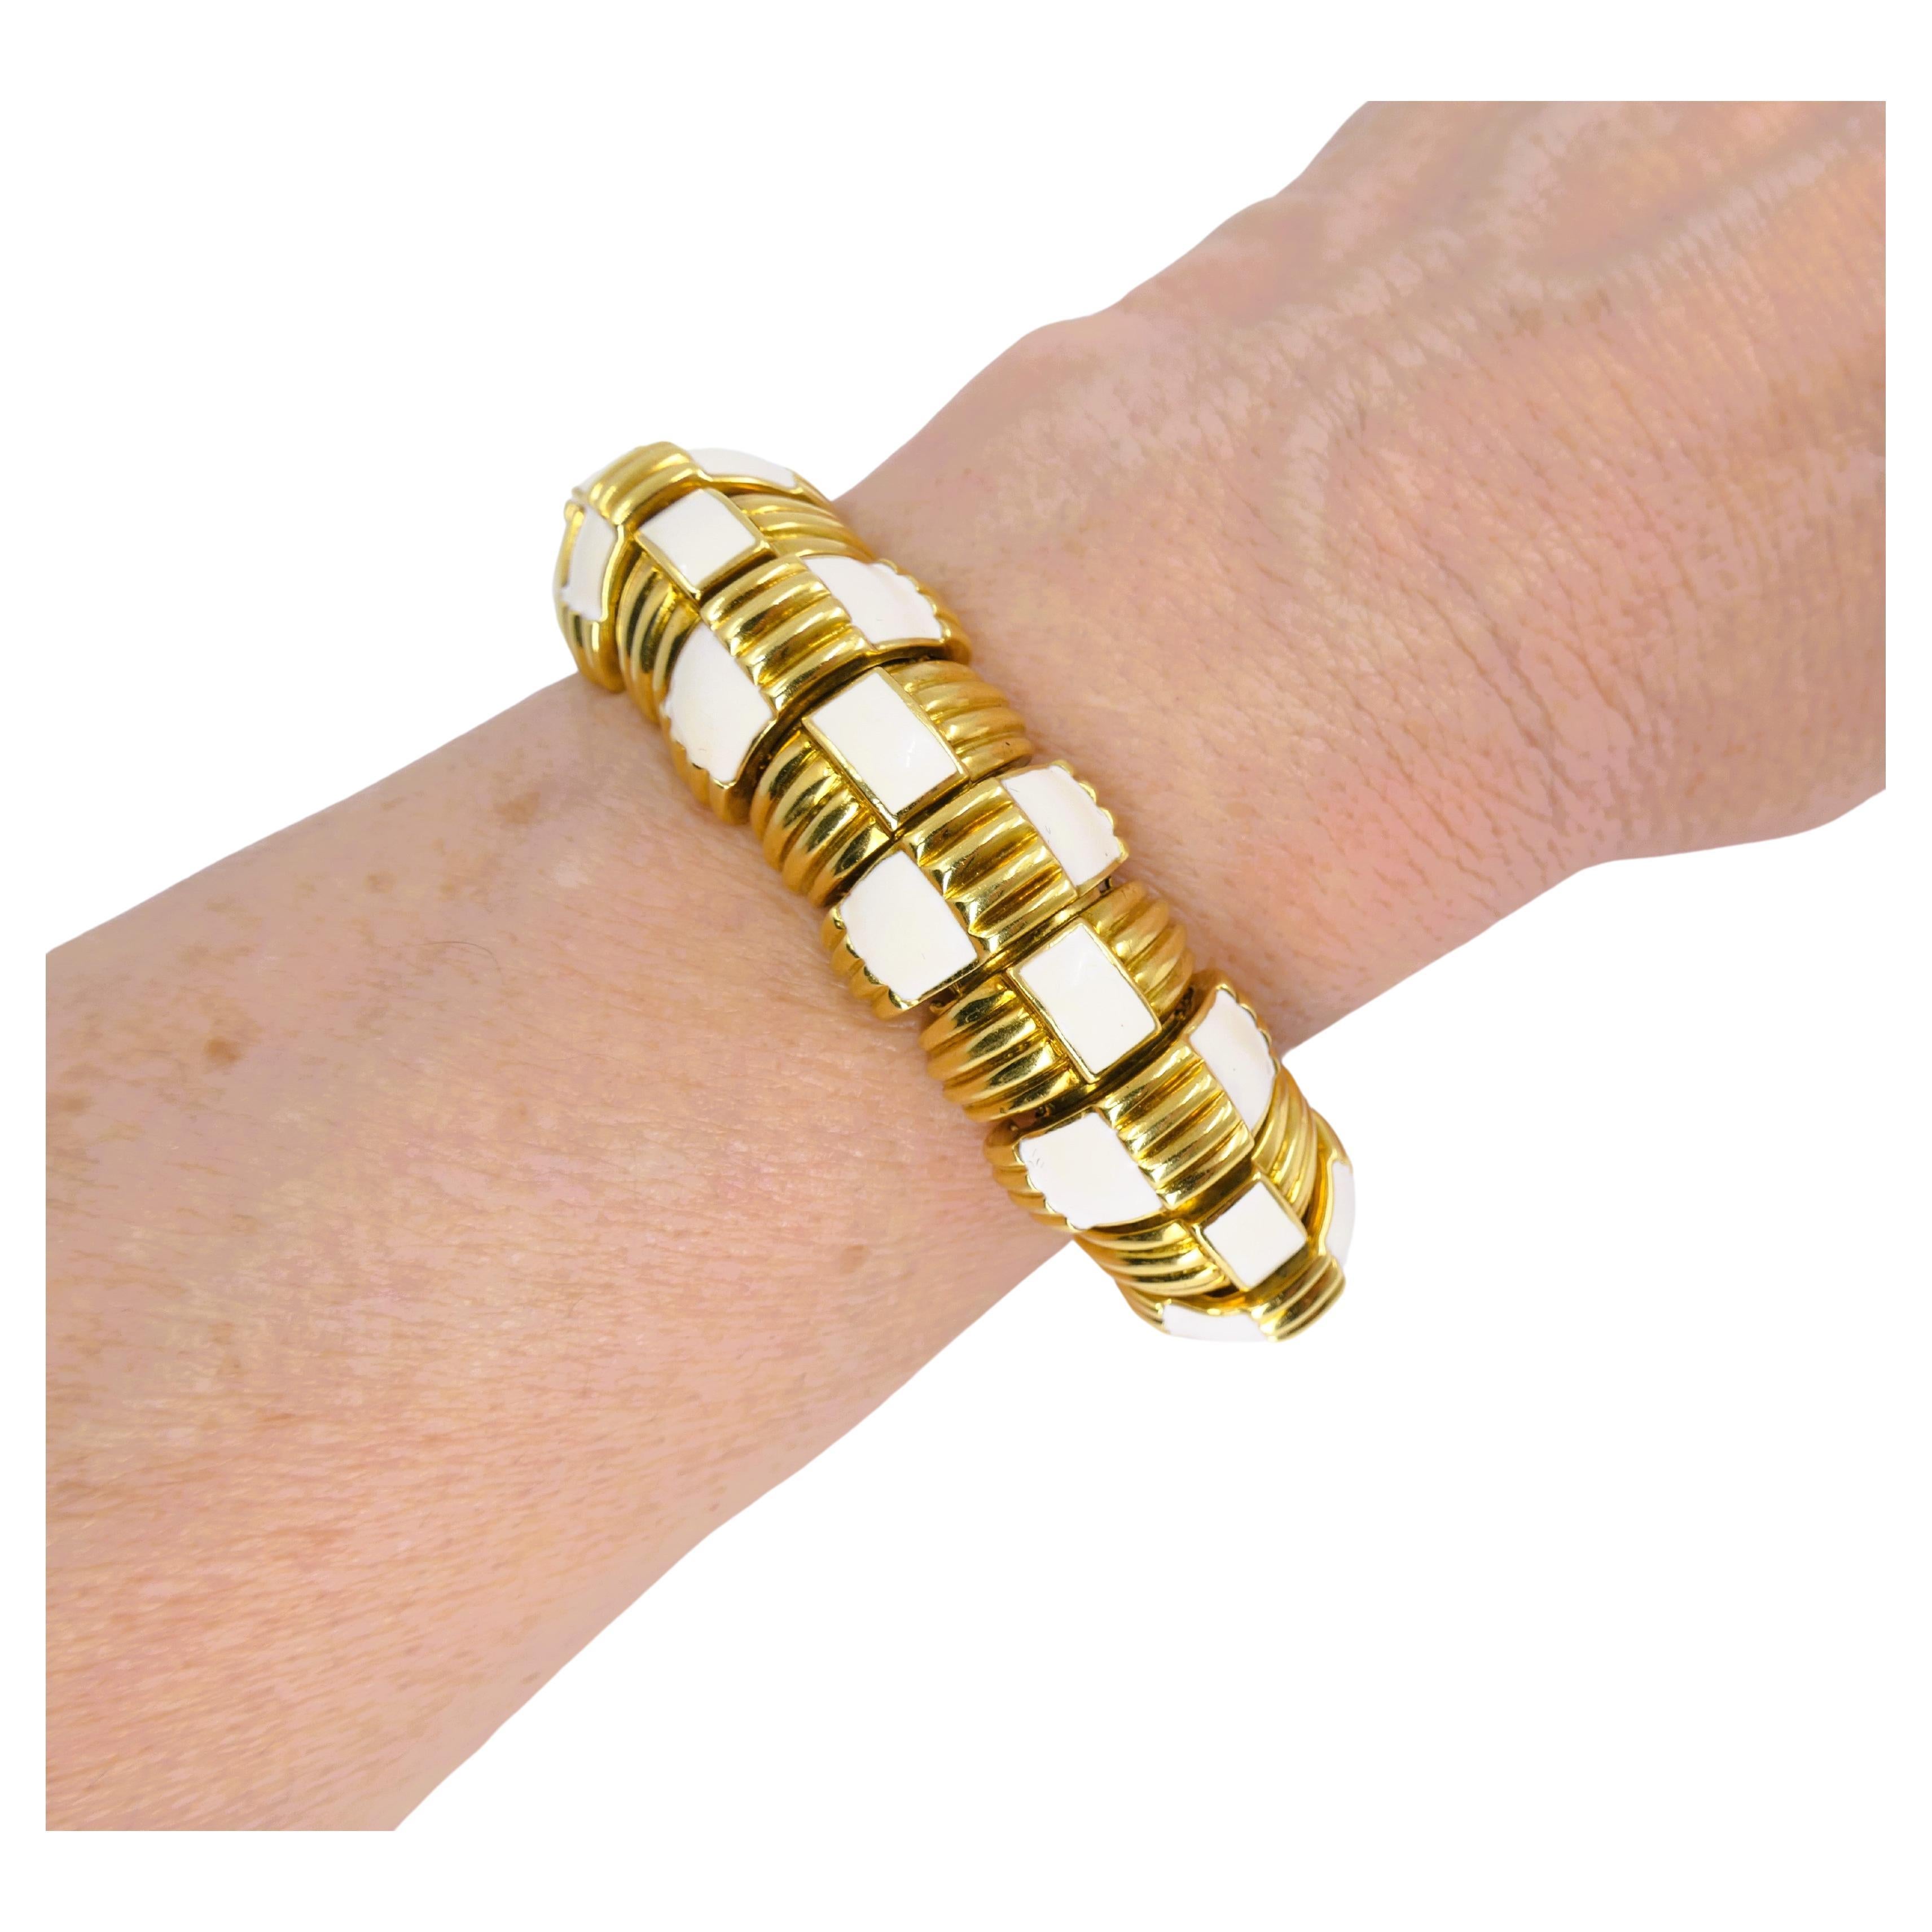 Ein wunderschönes David Webb Armband aus 18k Gold mit weißer Emaille.
Das Armband besteht aus halbkugelförmigen Teilen, die unsichtbar miteinander verbunden sind und ein flexibles Armband ergeben. Die goldenen Abschnitte wechseln sich mit dem